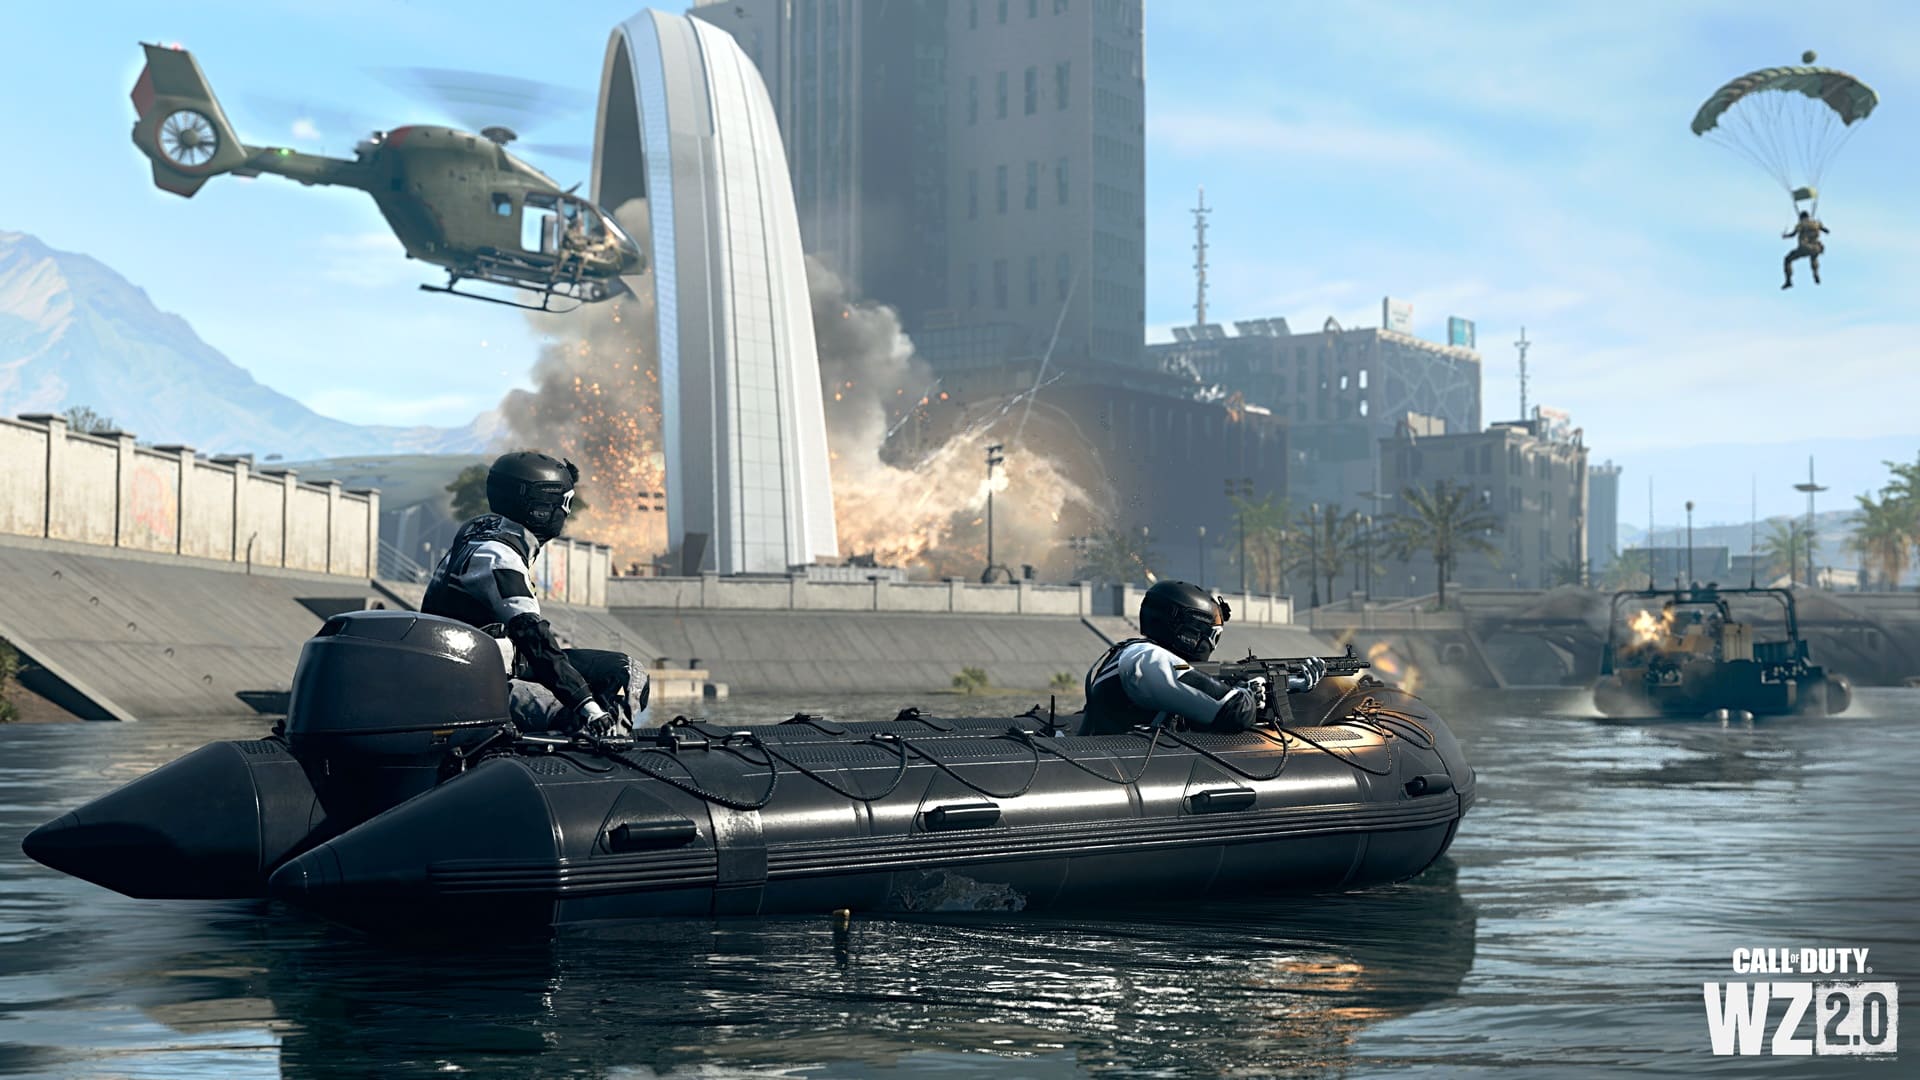 (Водные сражения также возможны в Warzone 2, как в кампании, так и в мультиплеере, как в лодке, так и под водой.)